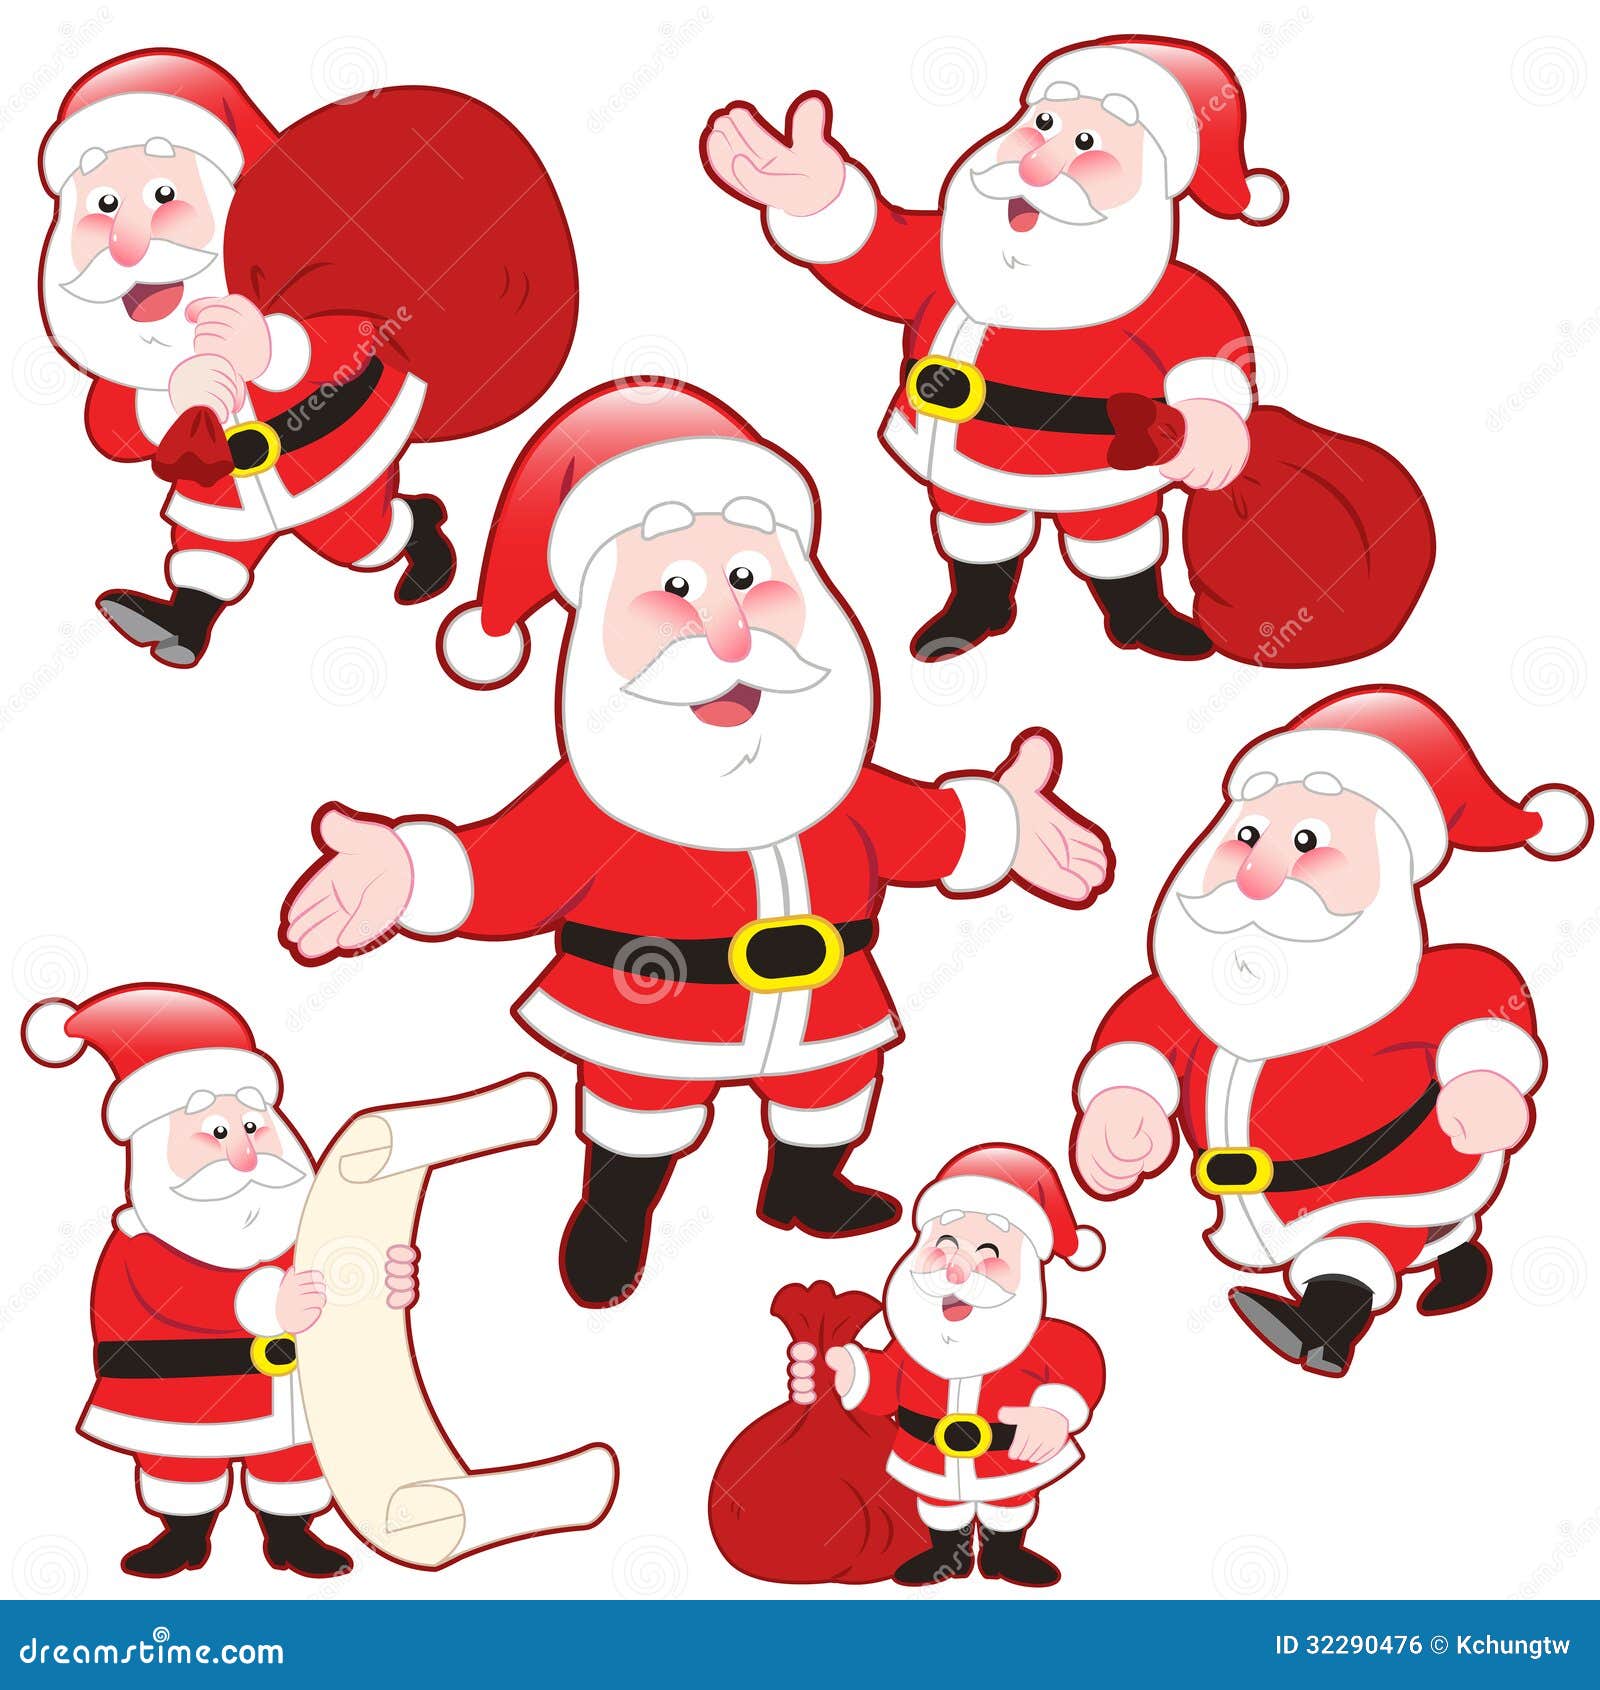 Cute Cartoon Santa Claus Collection Stock Vector